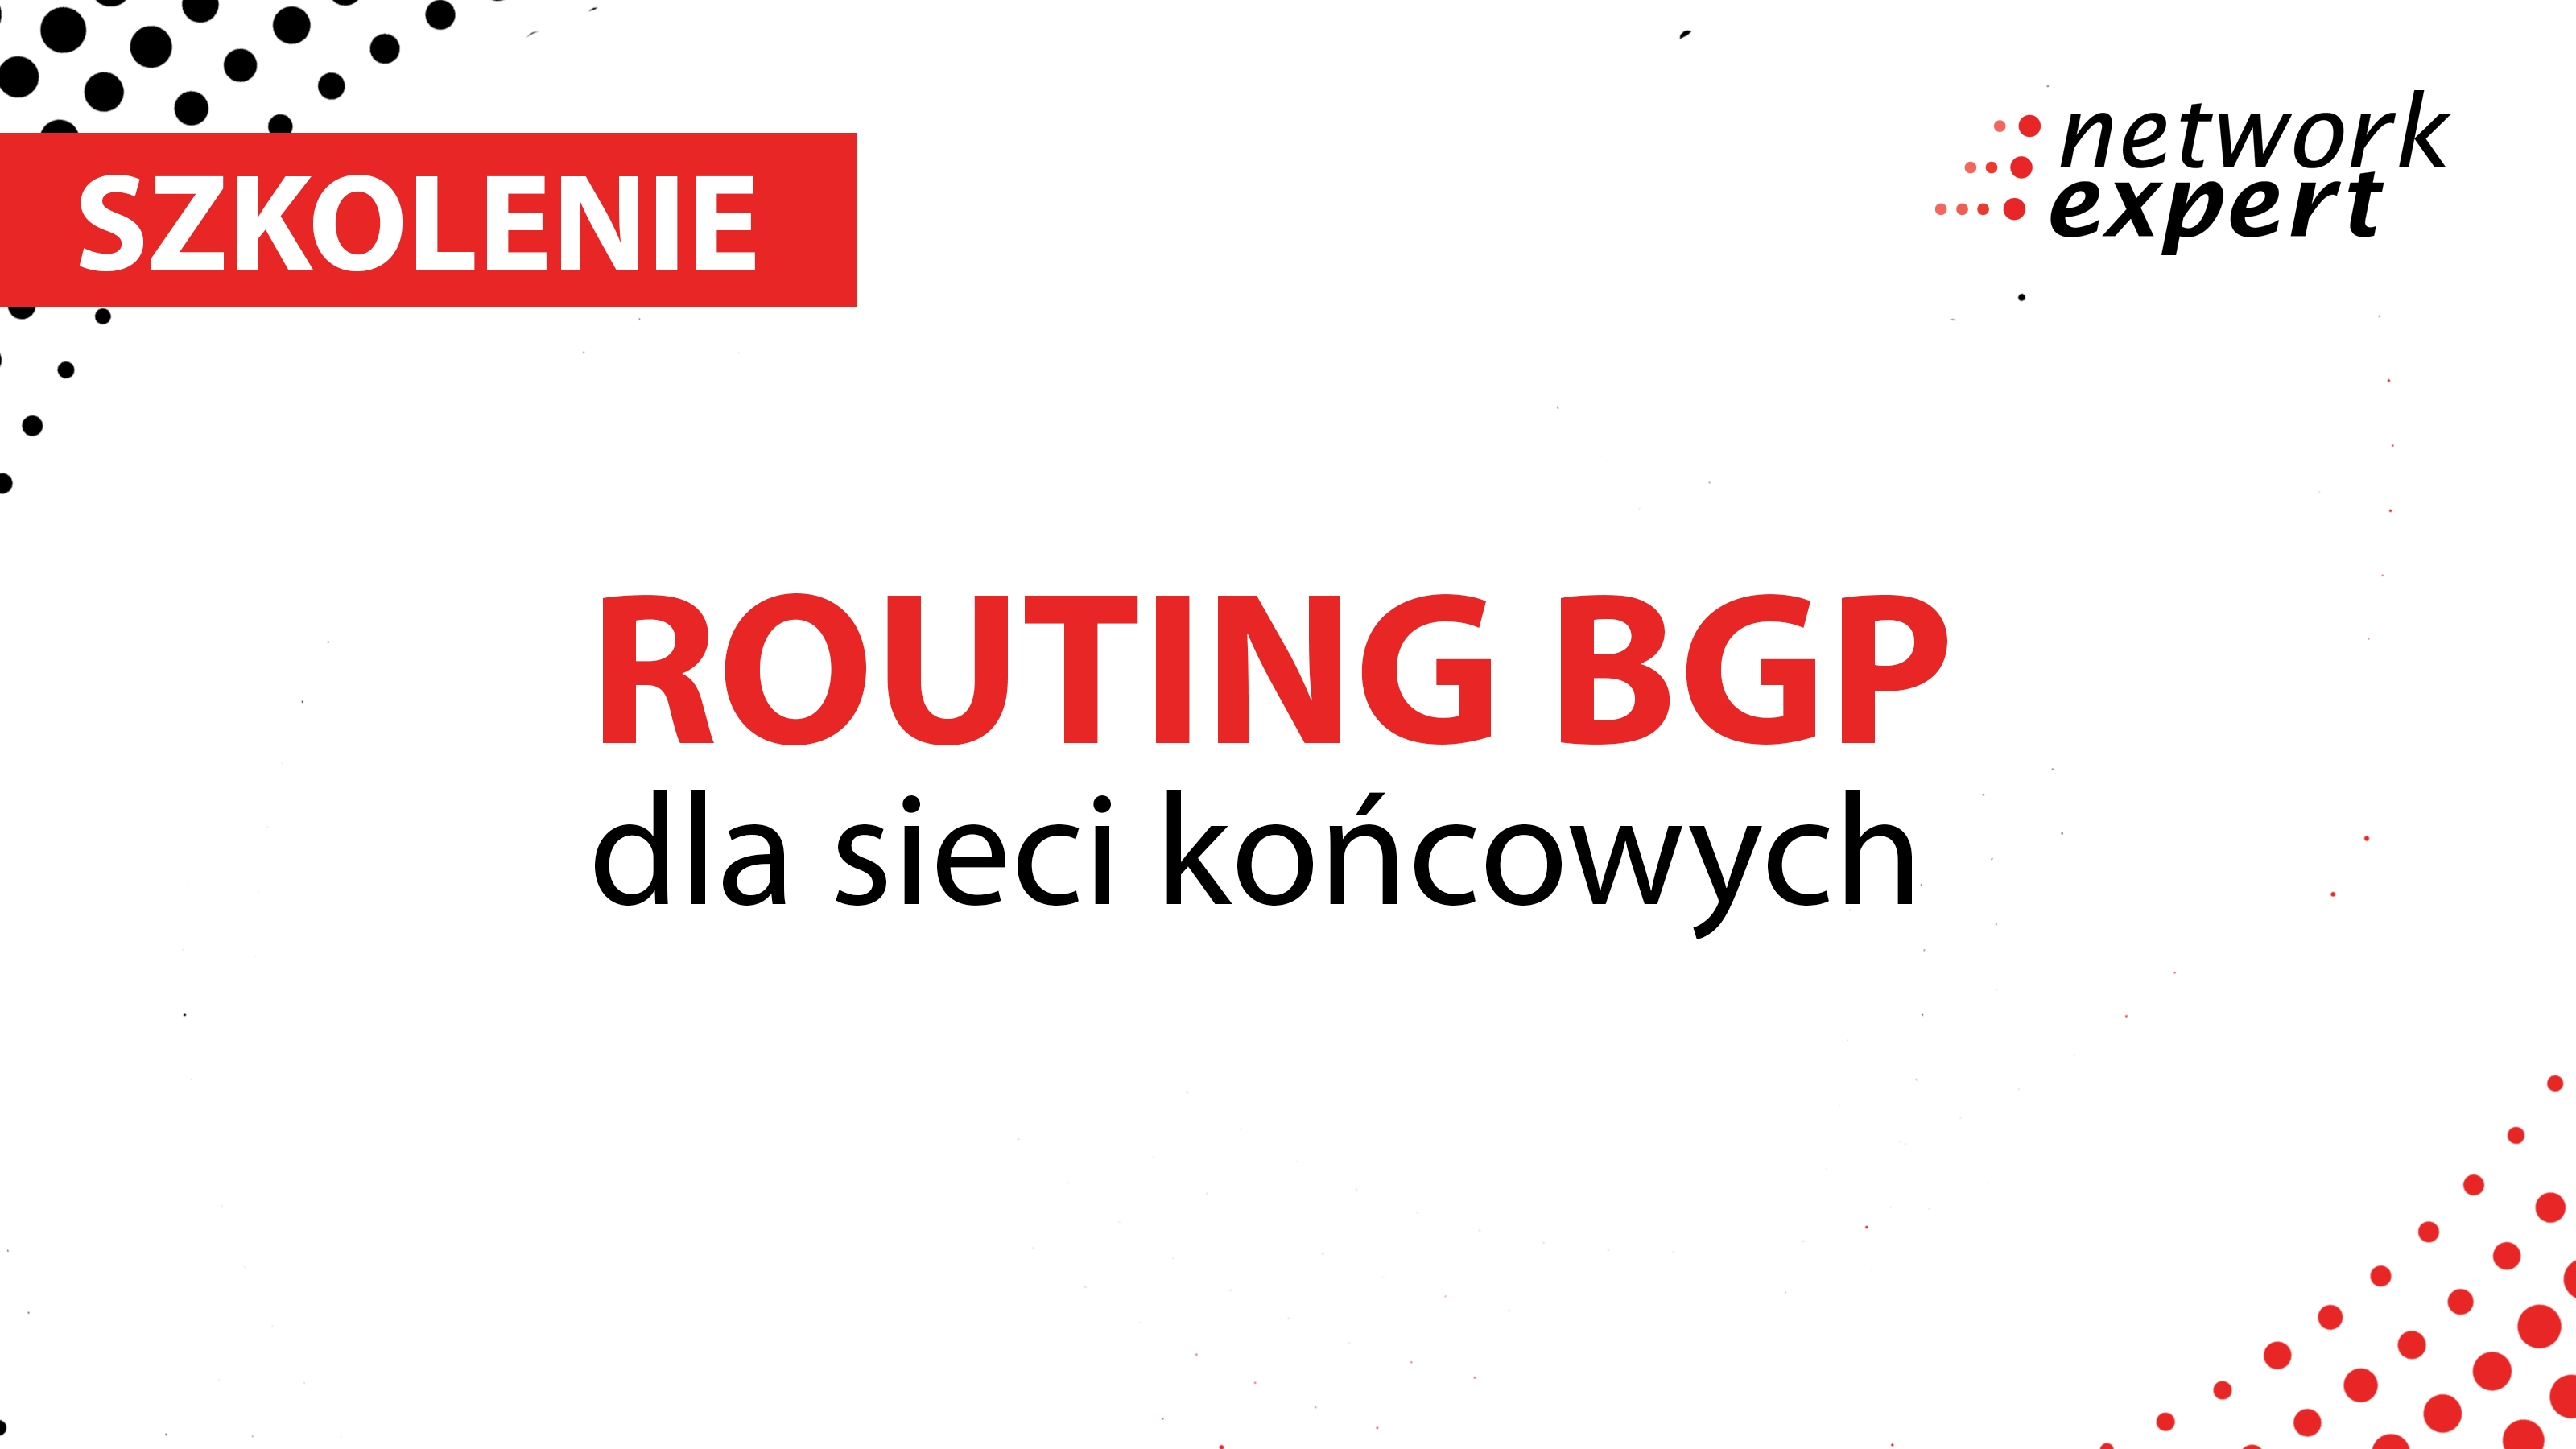 Routing BGP dla sieci końcowych – Szkolenie